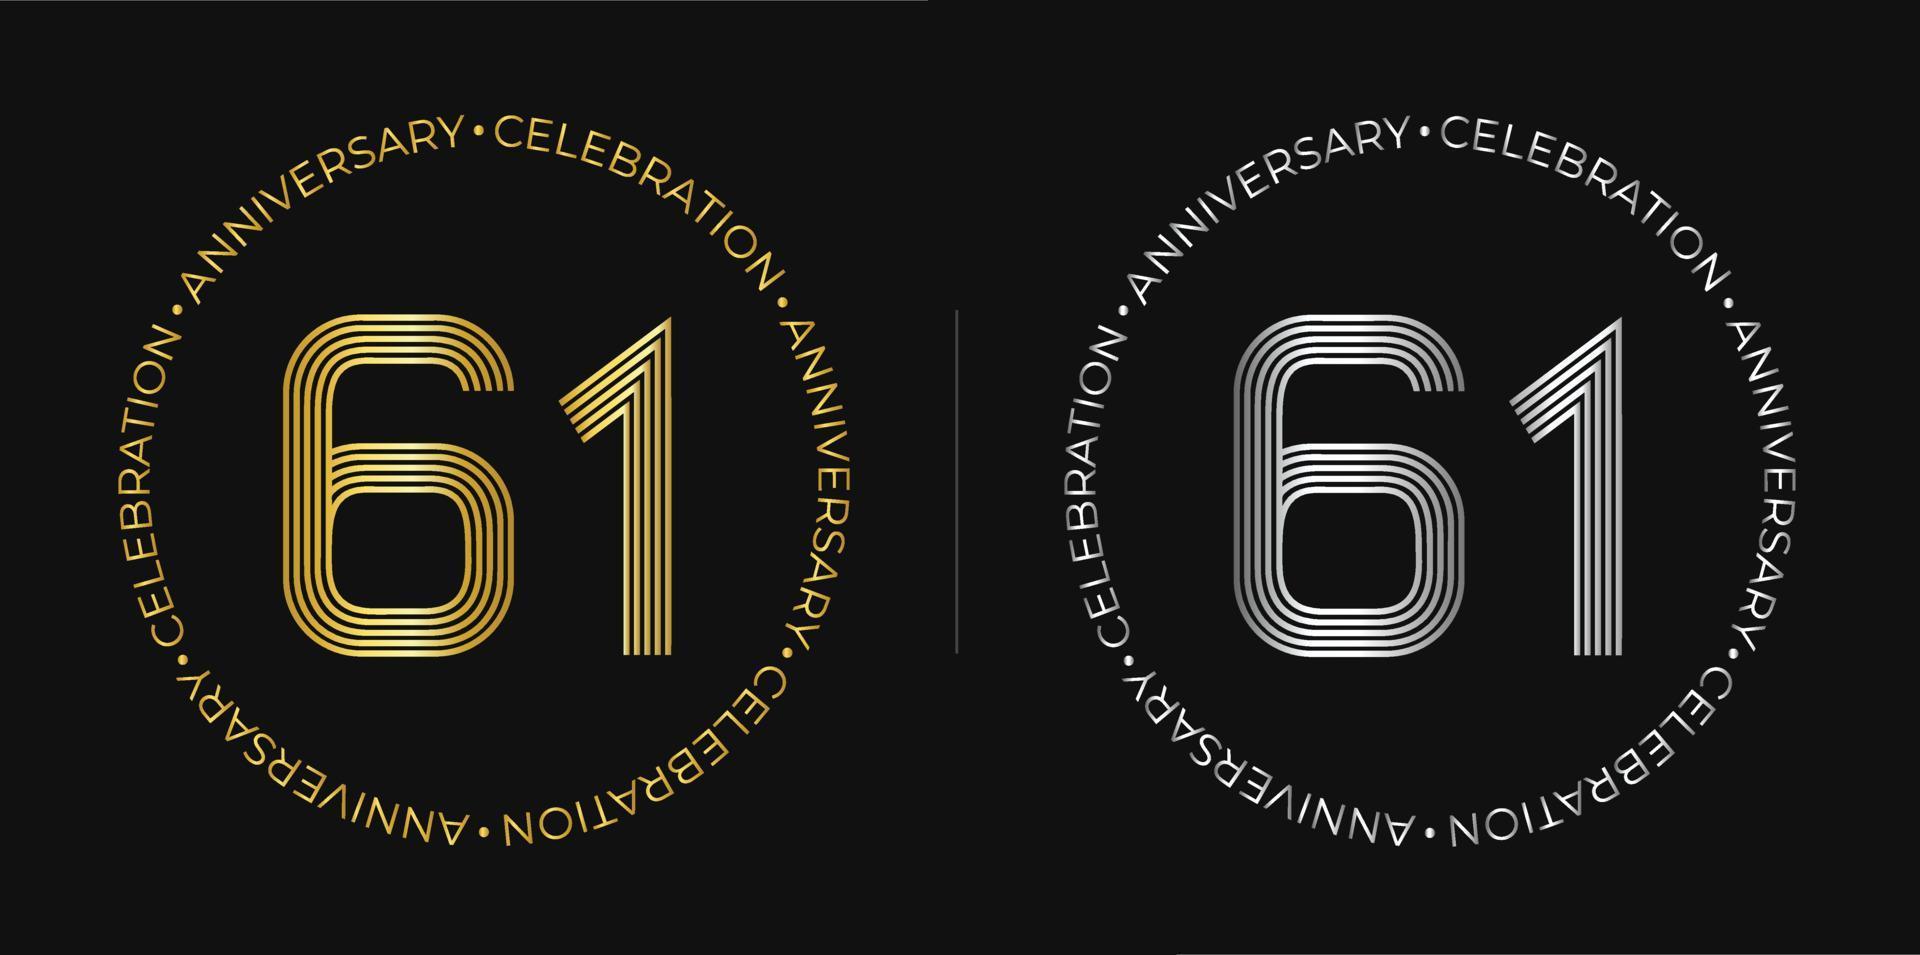 61e anniversaire. bannière de célébration d'anniversaire de soixante et un ans aux couleurs dorées et argentées. logo circulaire avec un design original de chiffres aux lignes élégantes. vecteur